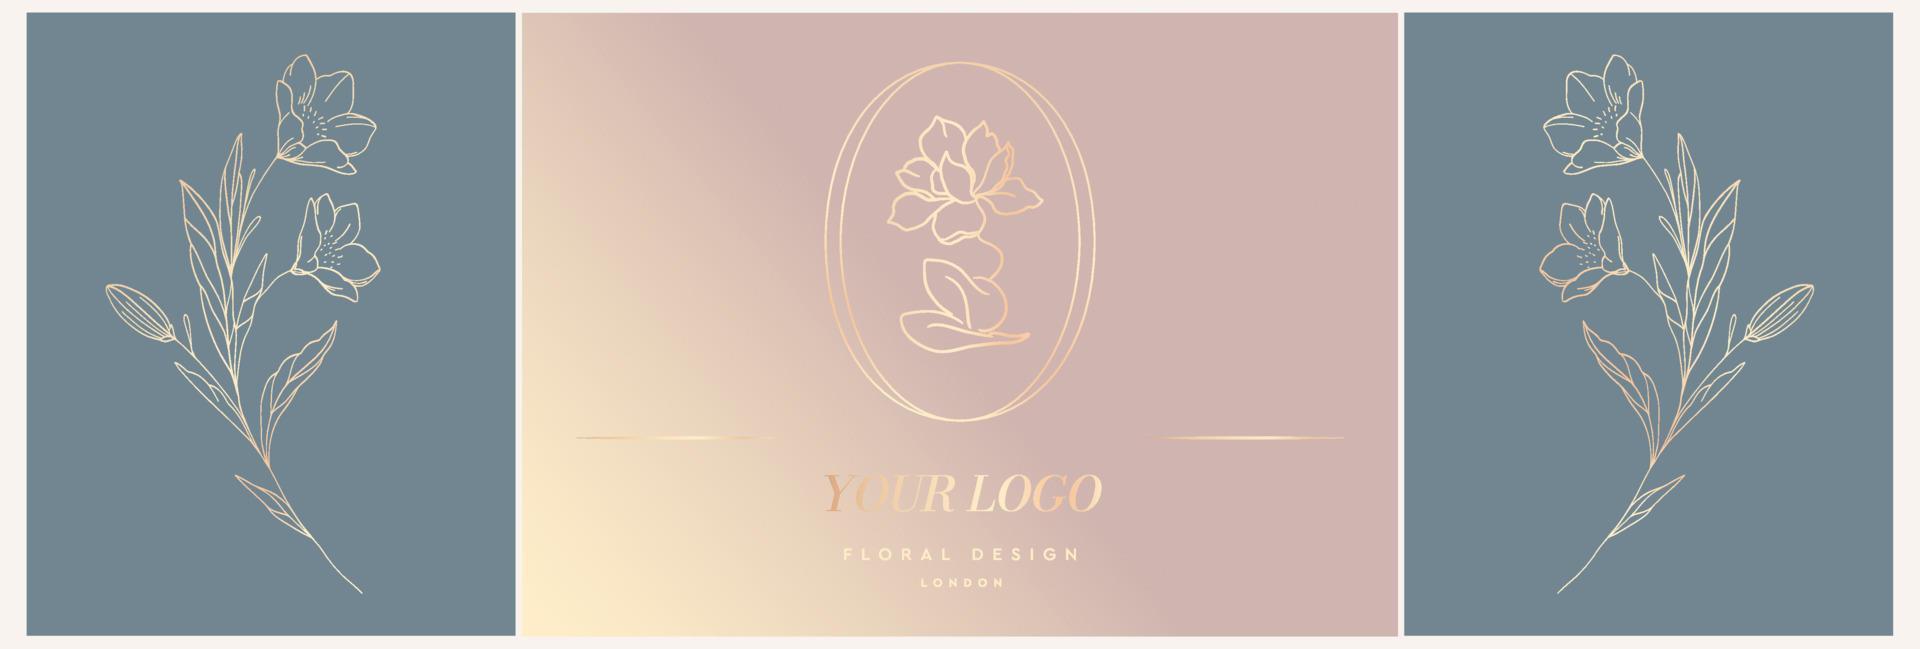 modèle de logo vectoriel élégant d'une fleur de rose dans un vase en deux variations de couleur. symbole abstrait dans un style linéaire pour les cosmétiques et les emballages, les bijoux, l'artisanat ou les produits de beauté.